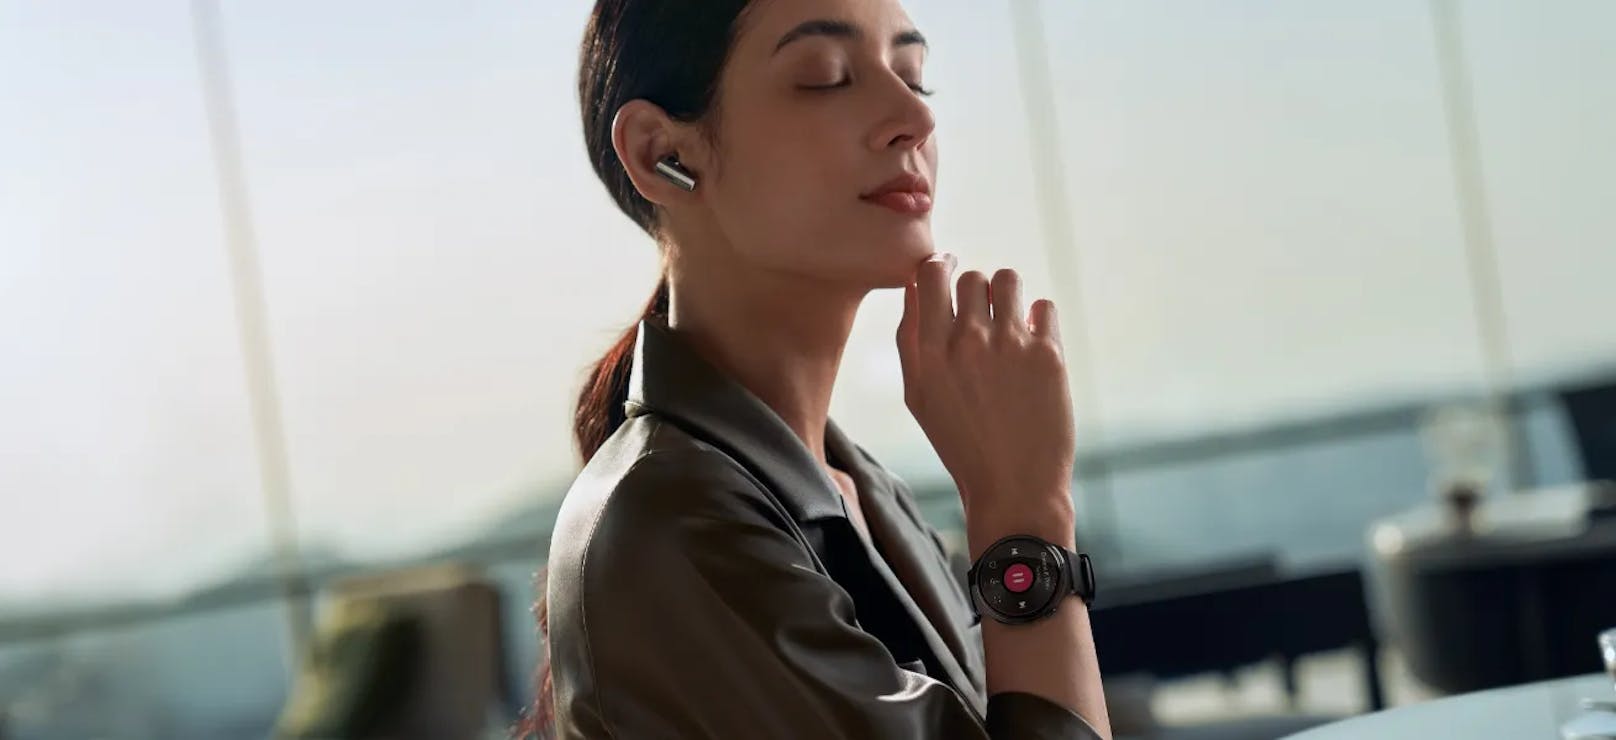 Die neue Smartwatch macht ein proaktives Gesundheitsmanagement zugänglicher und unkomplizierter.